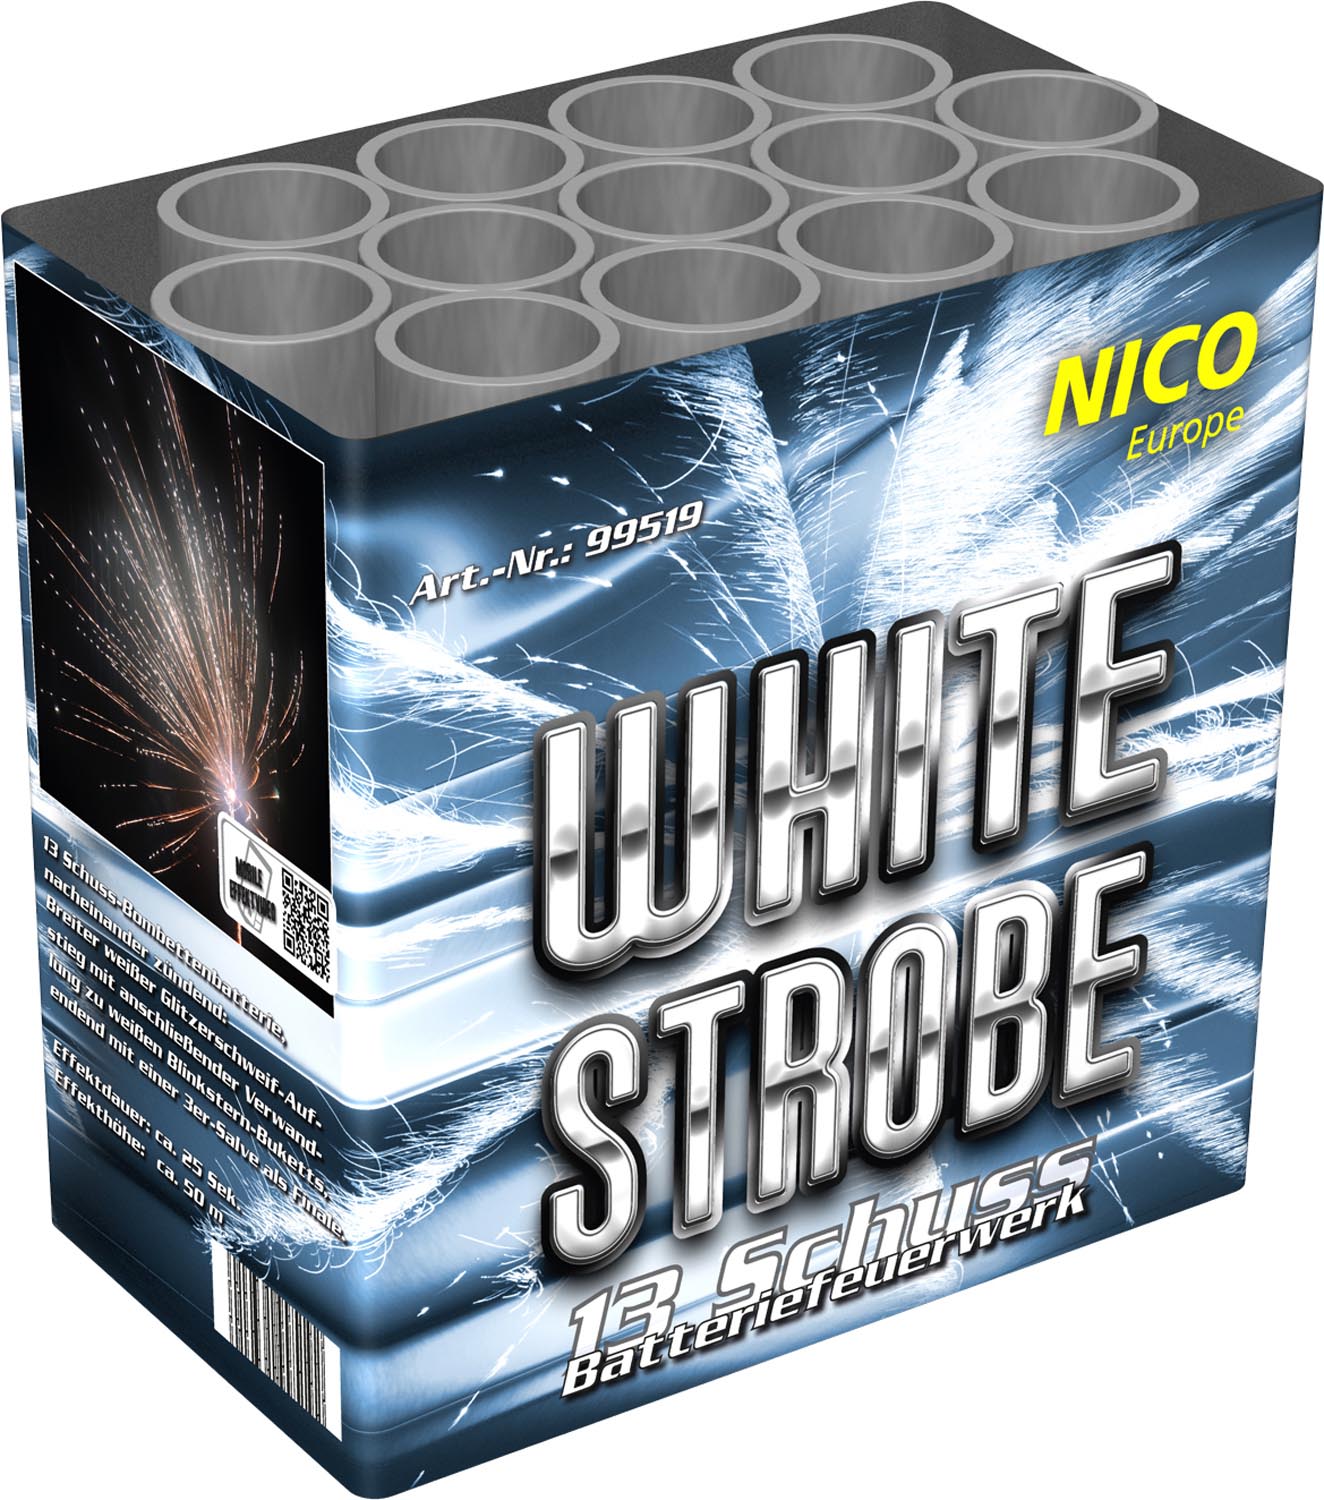 Nico White Strobe